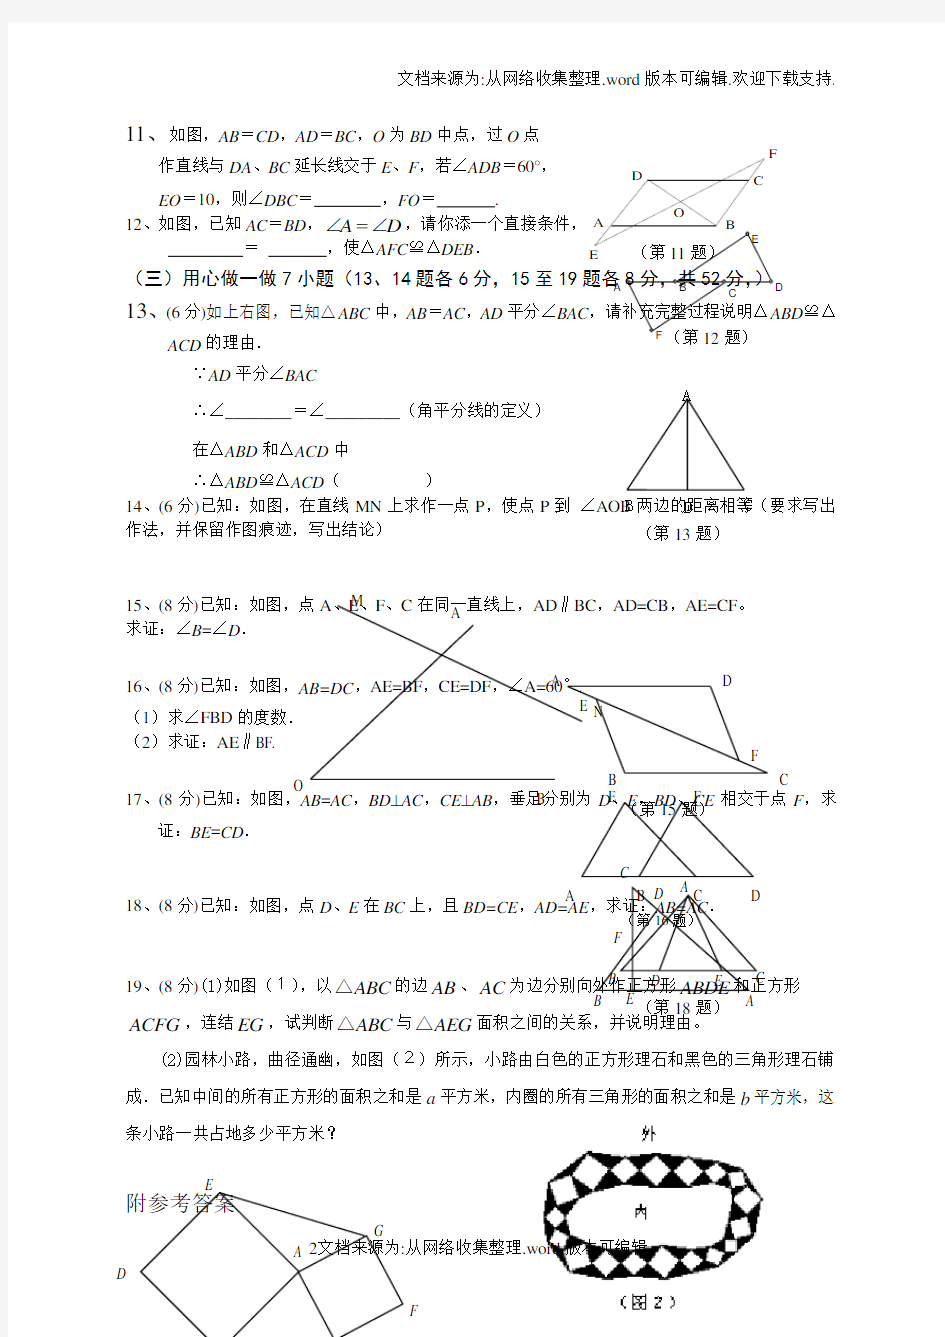 全等三角形基础测试题(供参考)